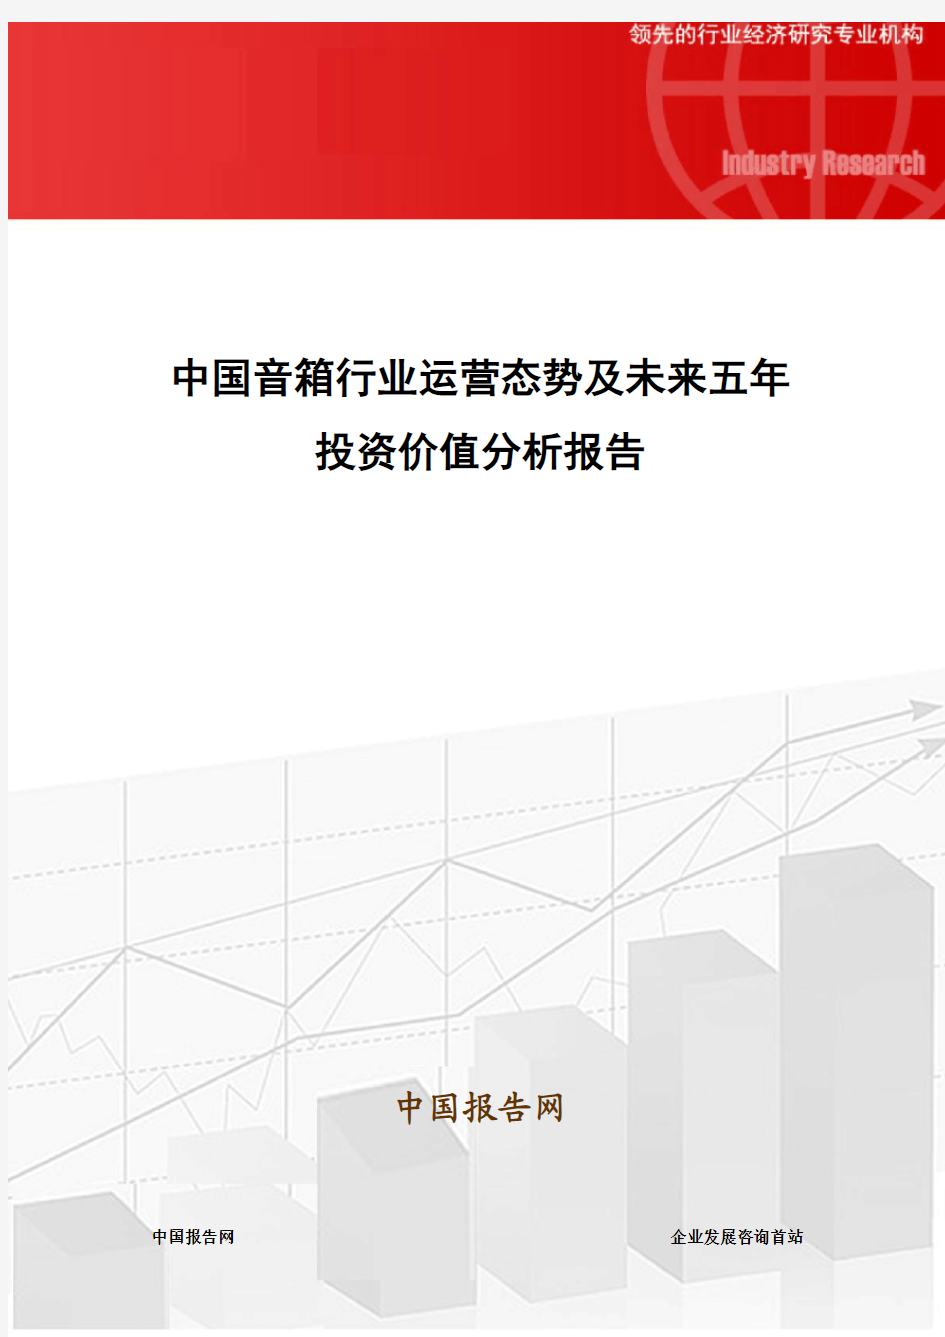 中国音箱行业运营态势及未来五年投资价值分析报告